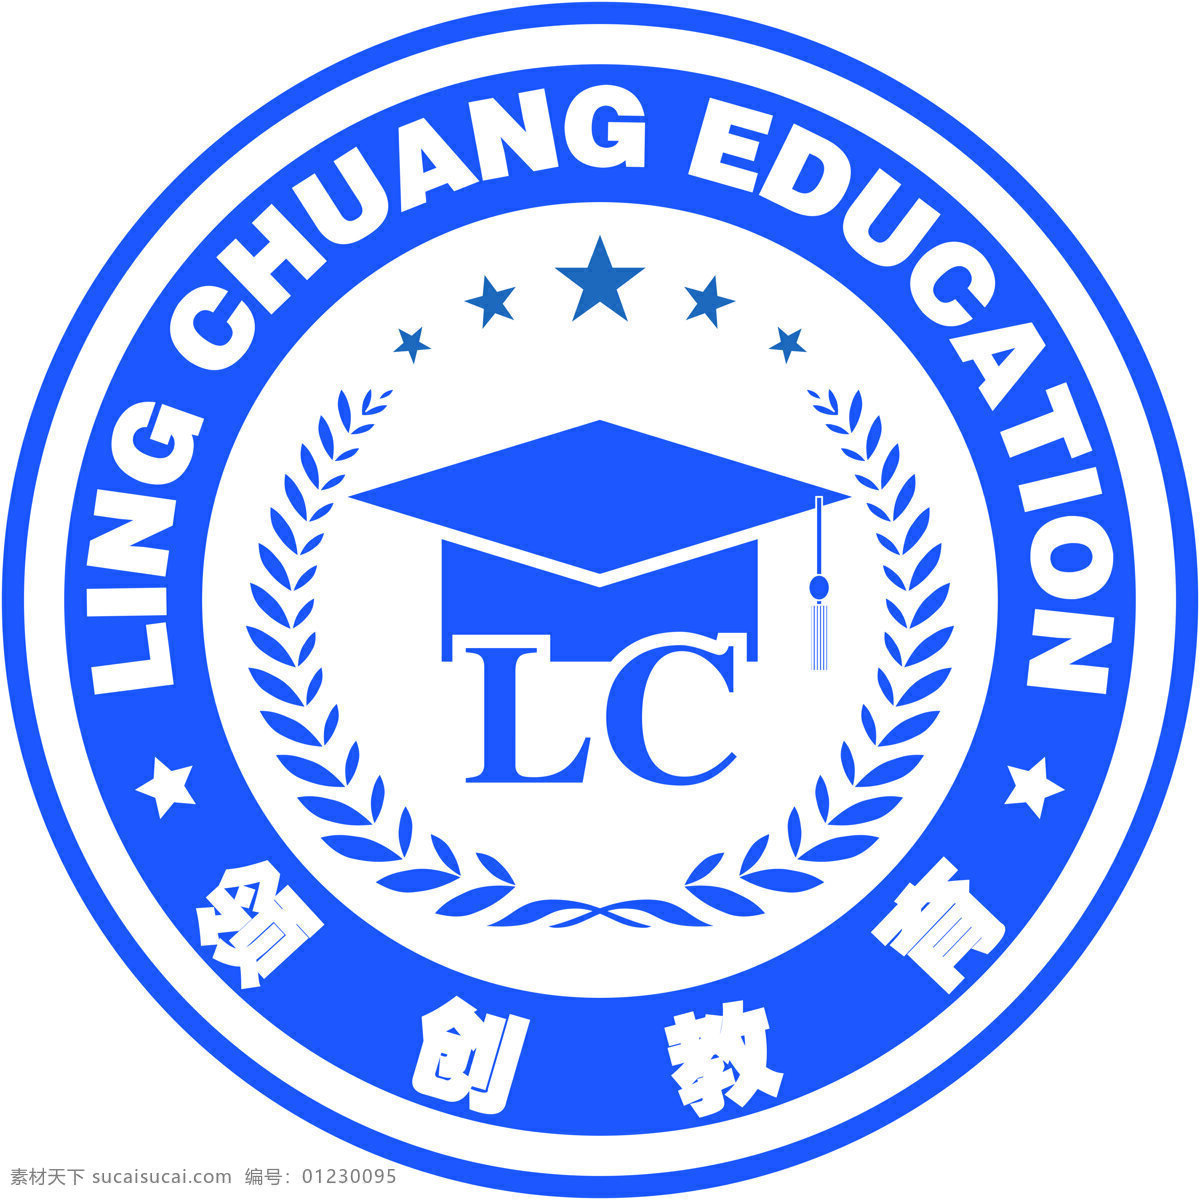 领创教育 教育 logo lc 领创 博士 学校 标志图标 企业 标志